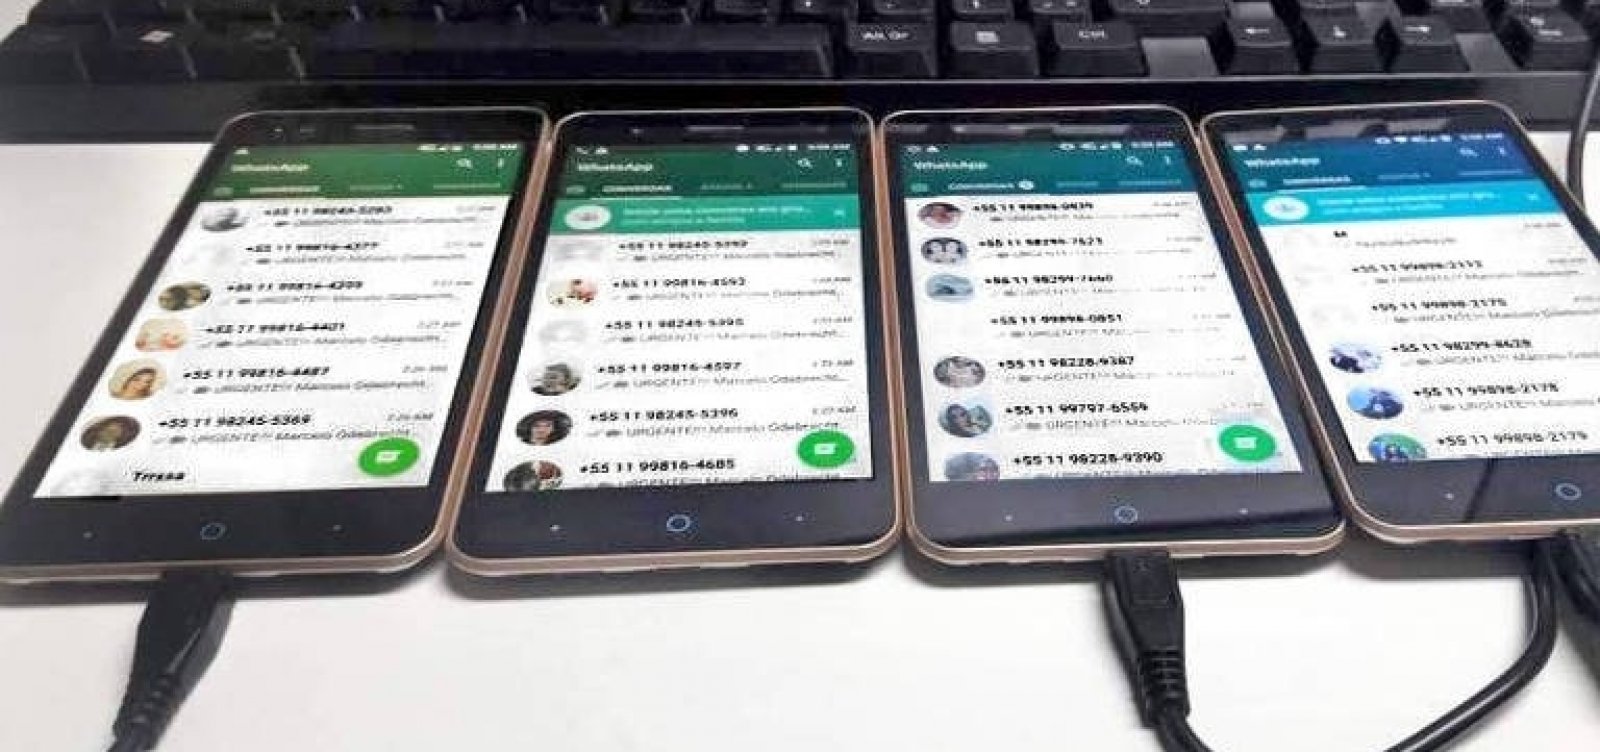 Imagens de CPMI indicam disparo ilegal de mensagens pelo WhatsApp na eleição